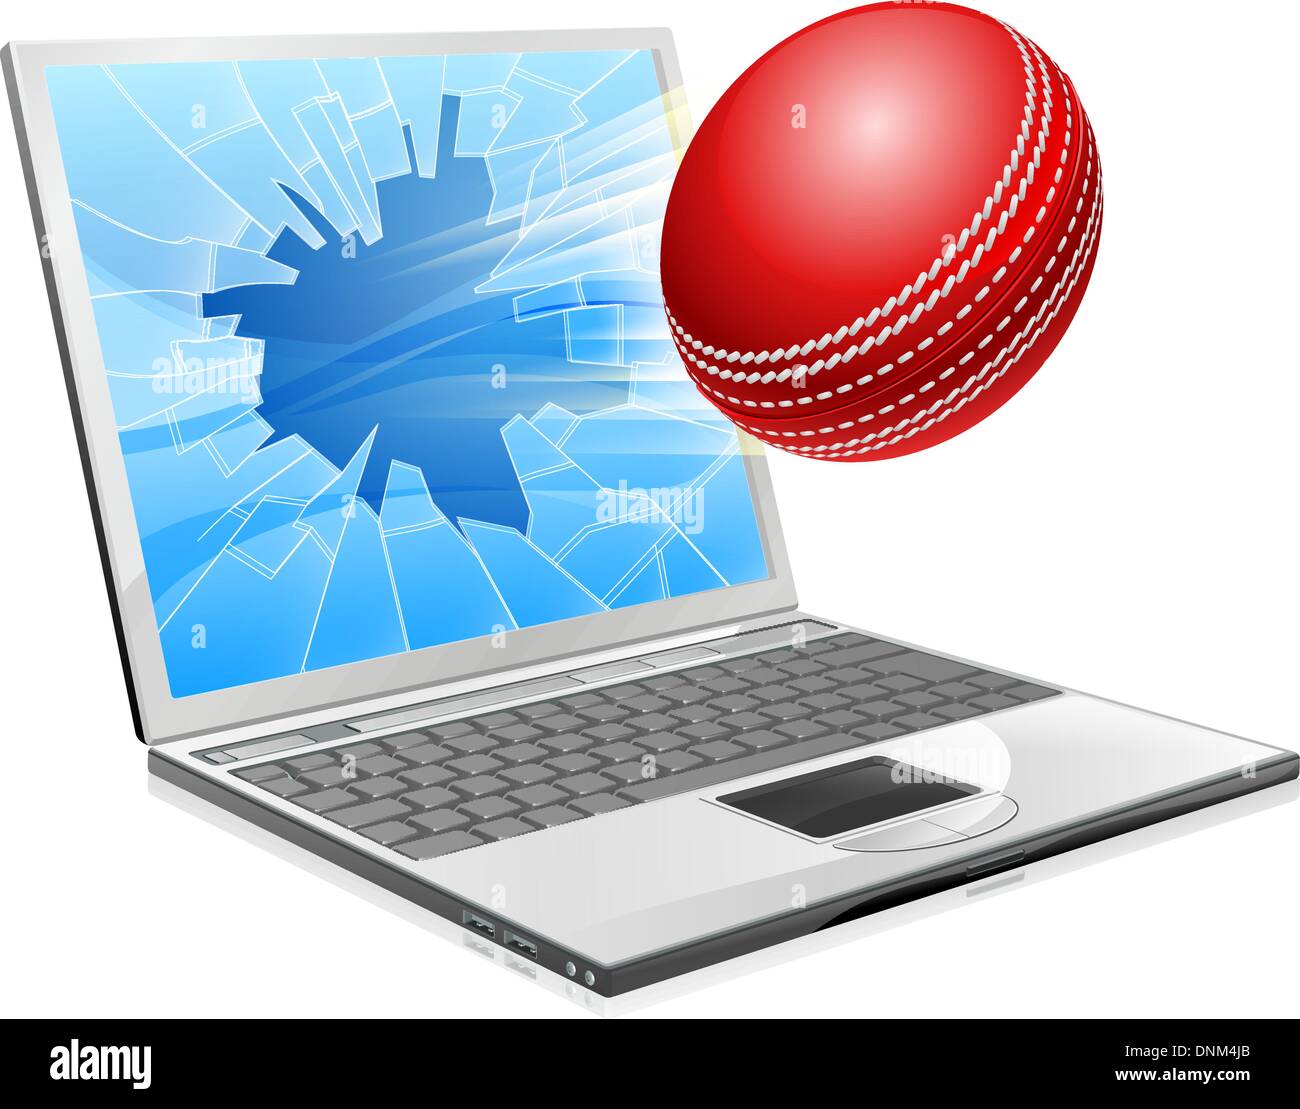 Beispiel für ein Cricketball fliegen aus einem defekten Laptop-Computer-Bildschirm Stock Vektor